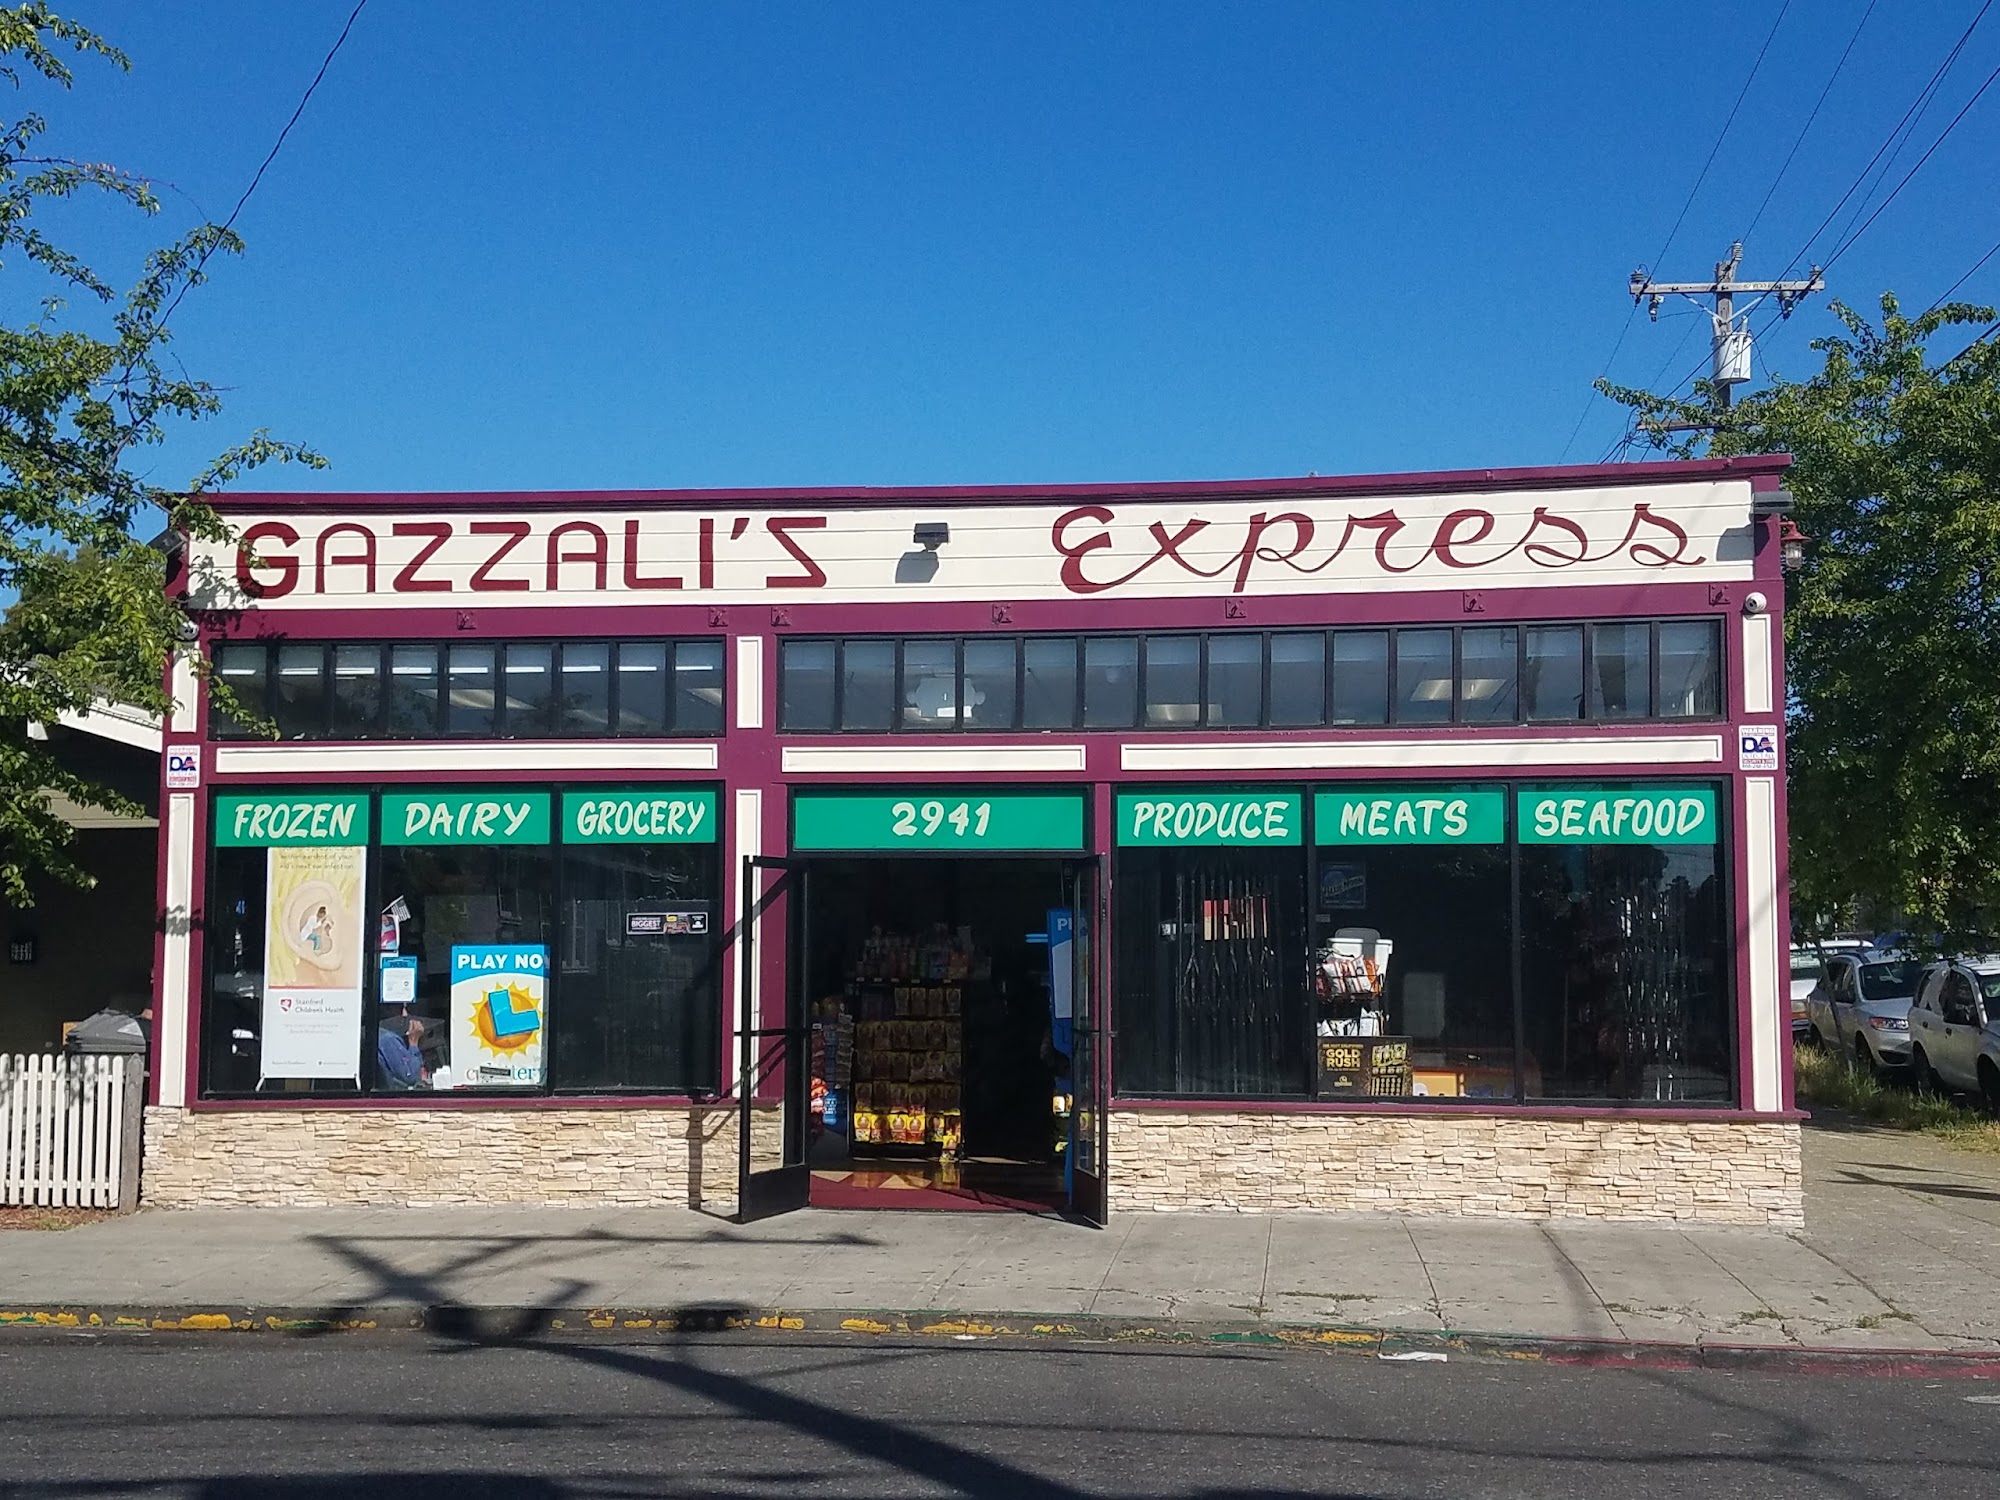 Gazzali's Express